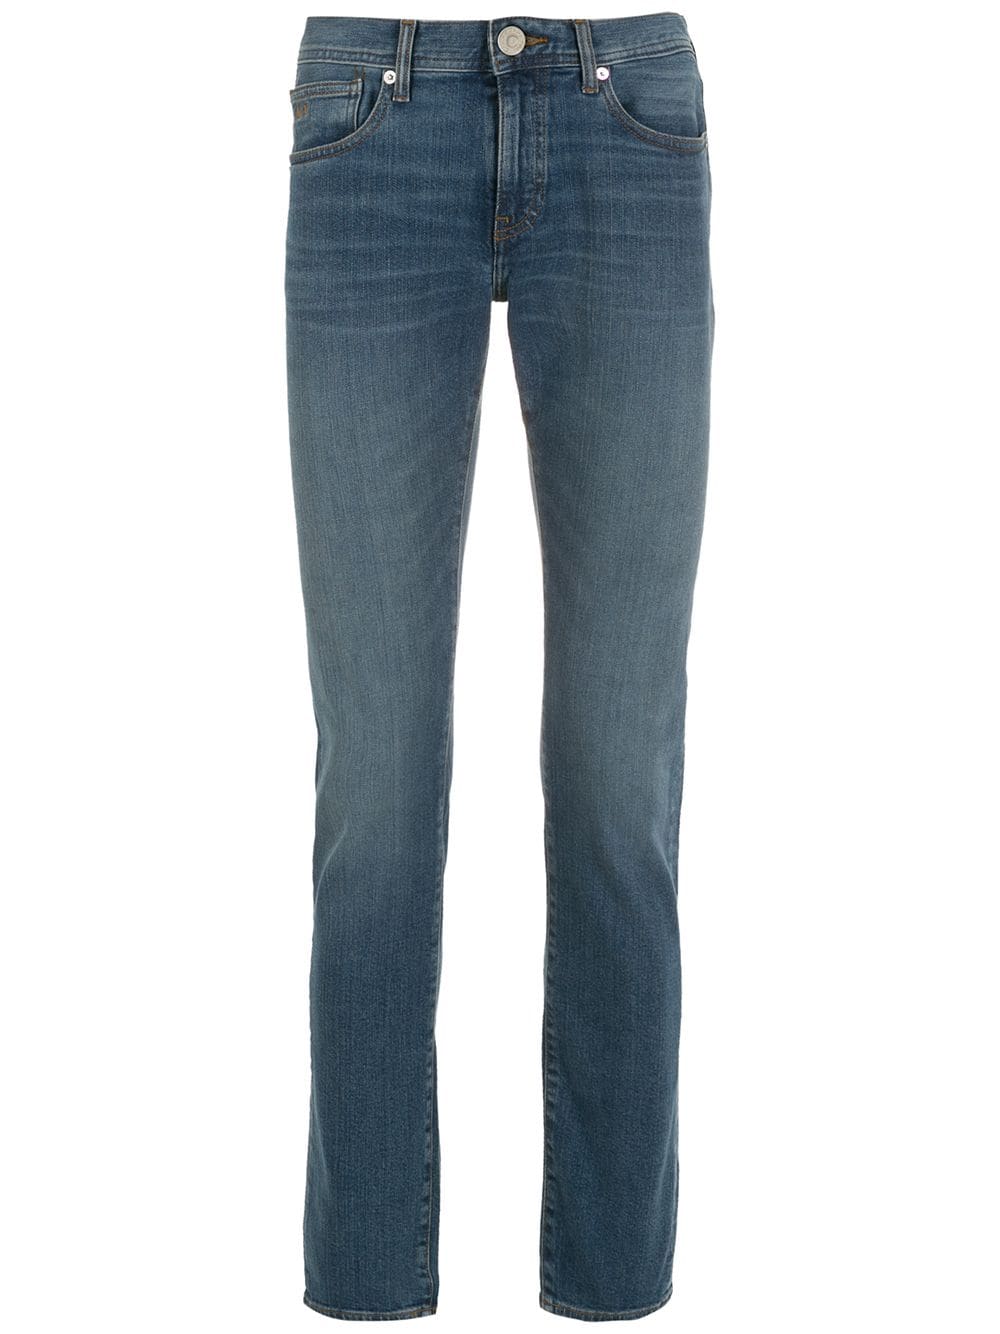 фото Armani exchange джинсы скинни с заниженной талией